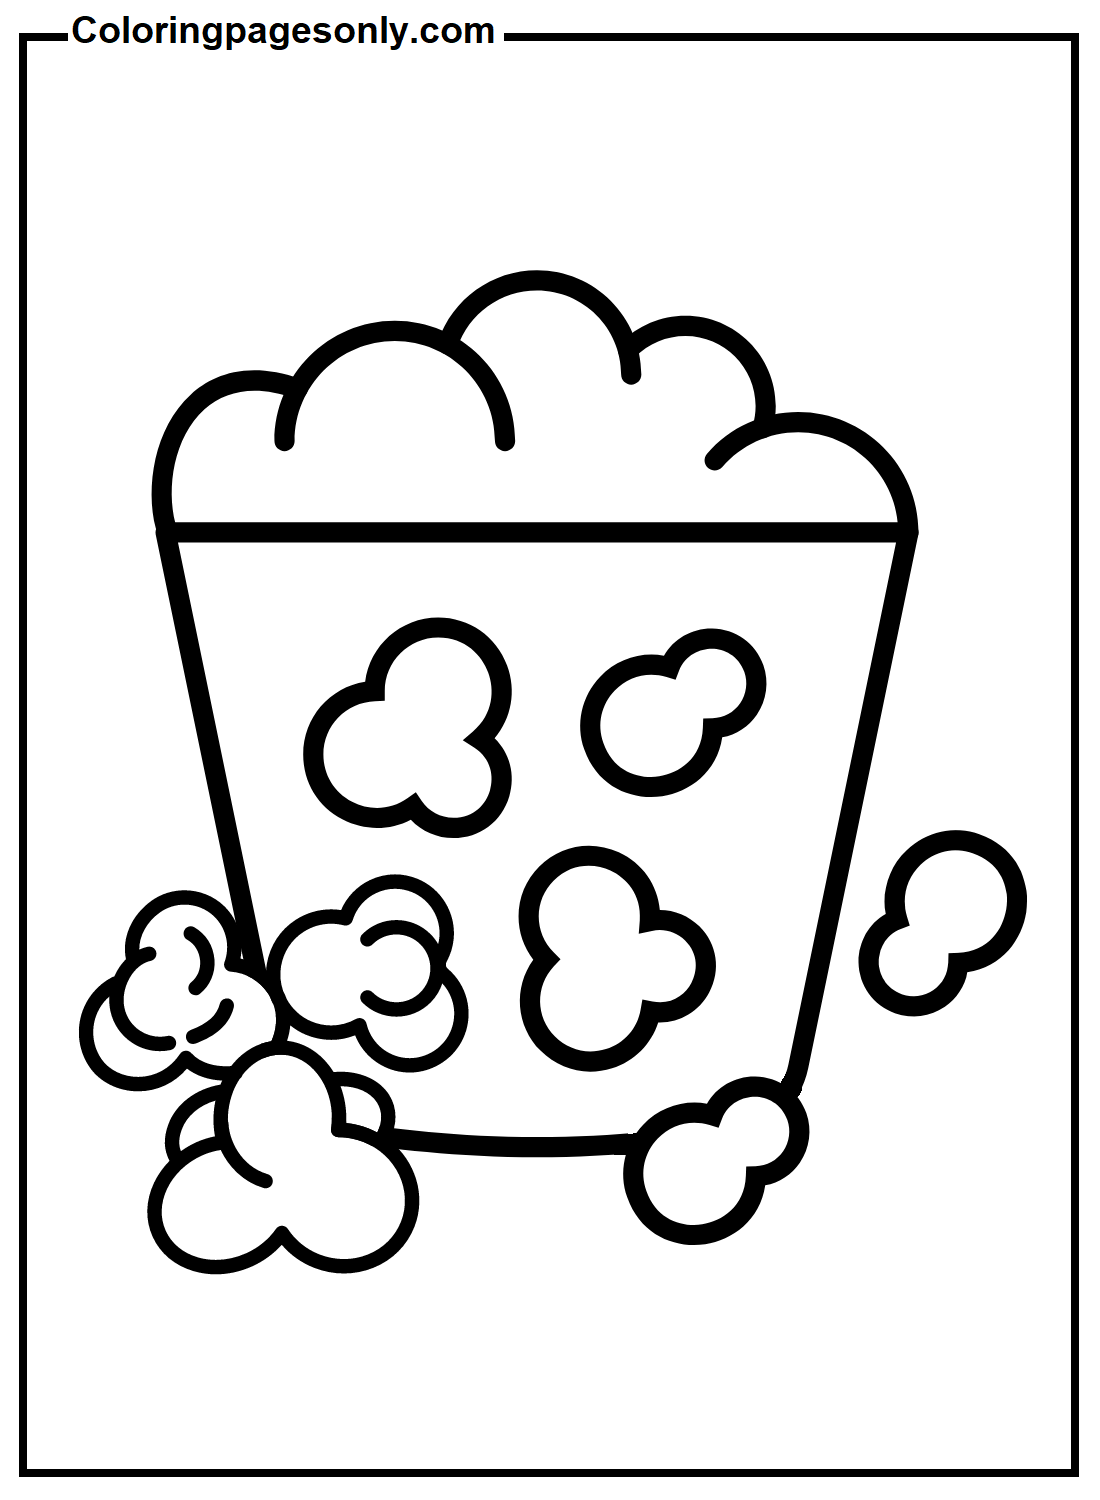 Popcorn kleurenvellen van Popcorn